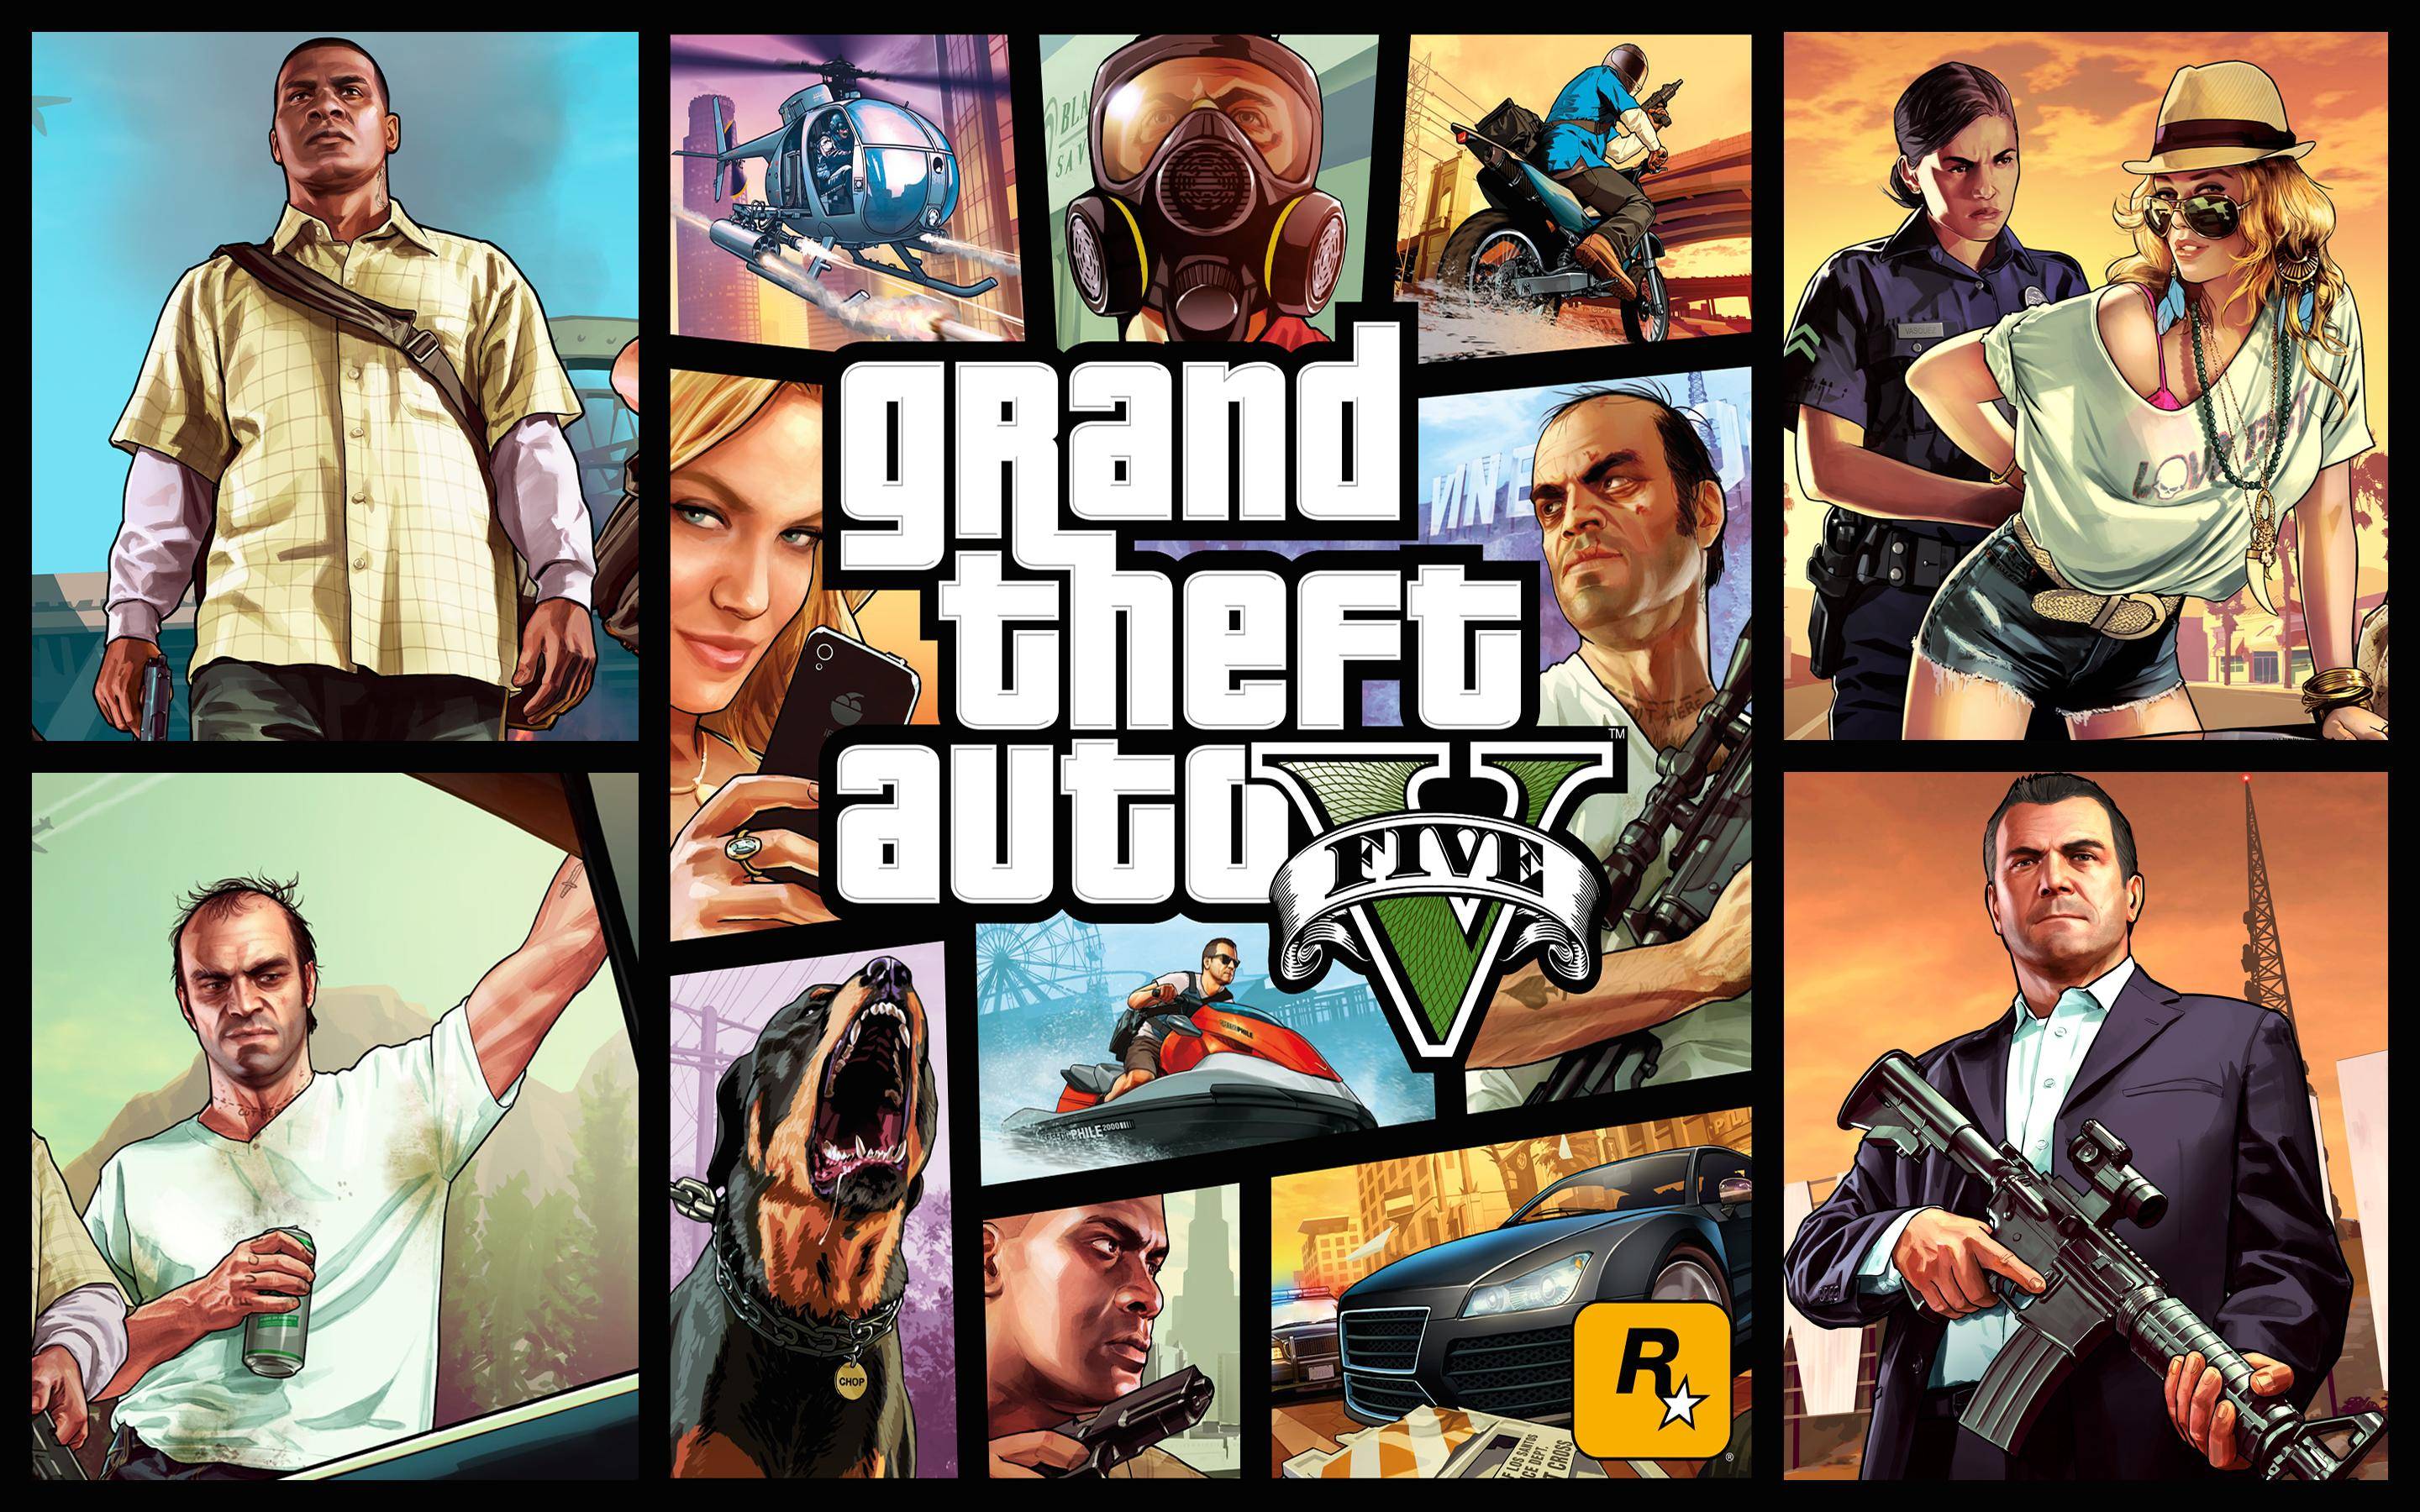 Re Grand Theft Auto V